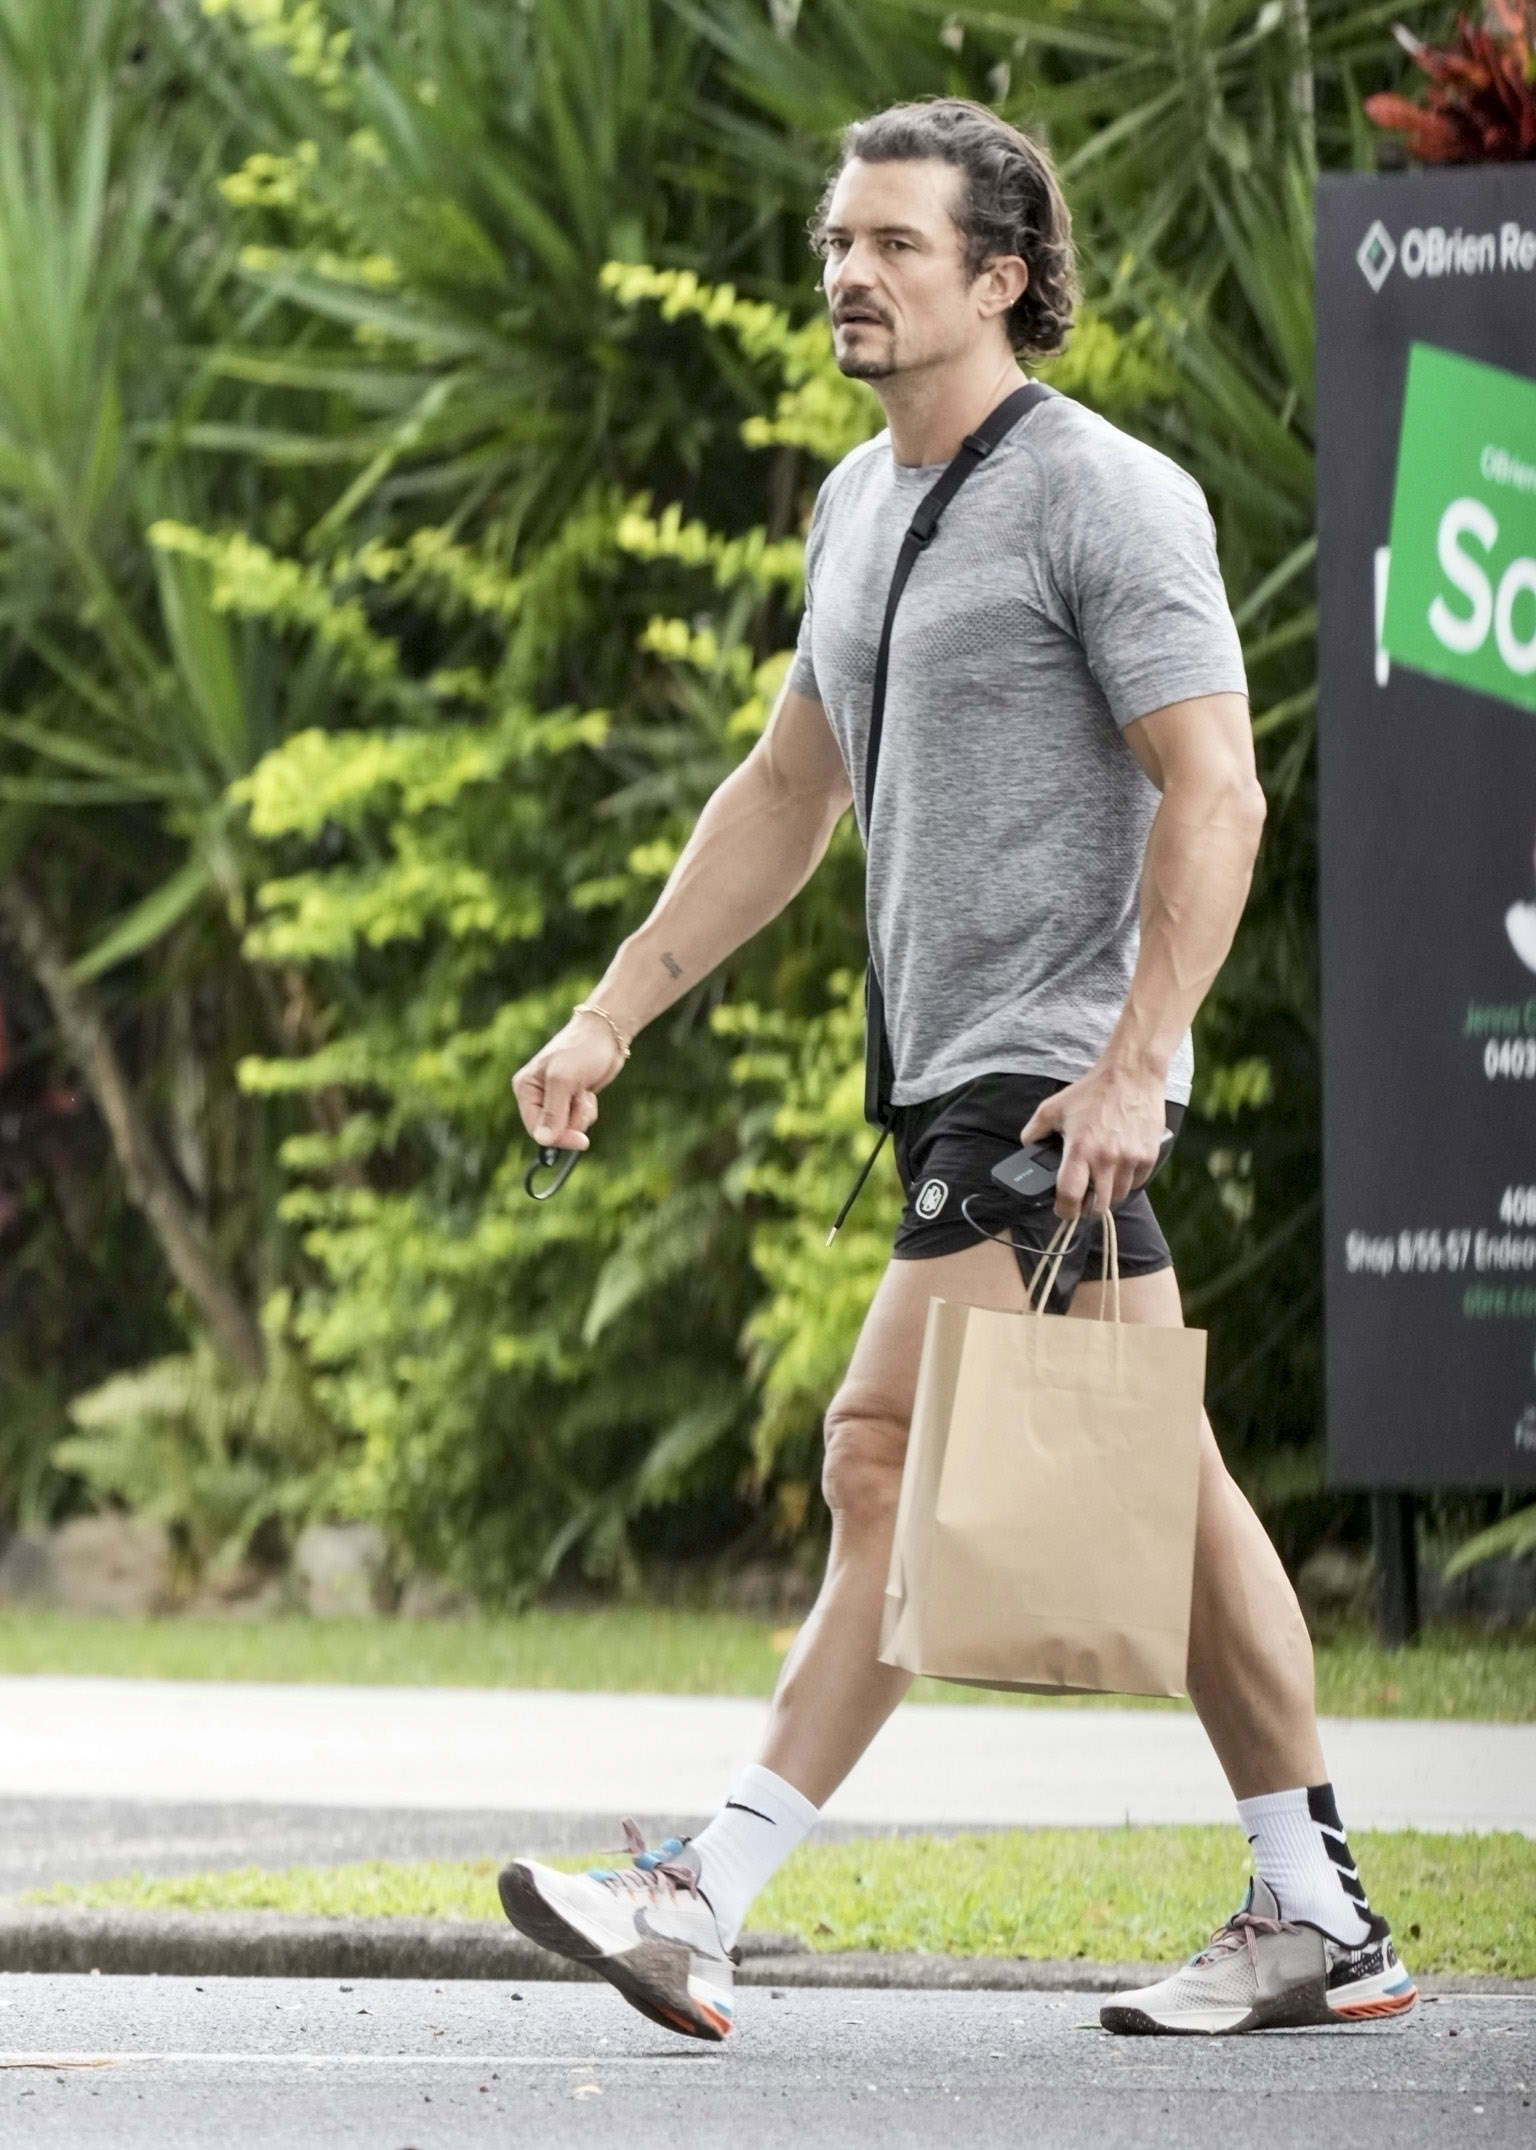 Orlando Bloom recorrió un mercado de Port Douglas, Australia, después de haber entrenado en un gimnasio privado. Lució un look deportivo de short negro y remera gris